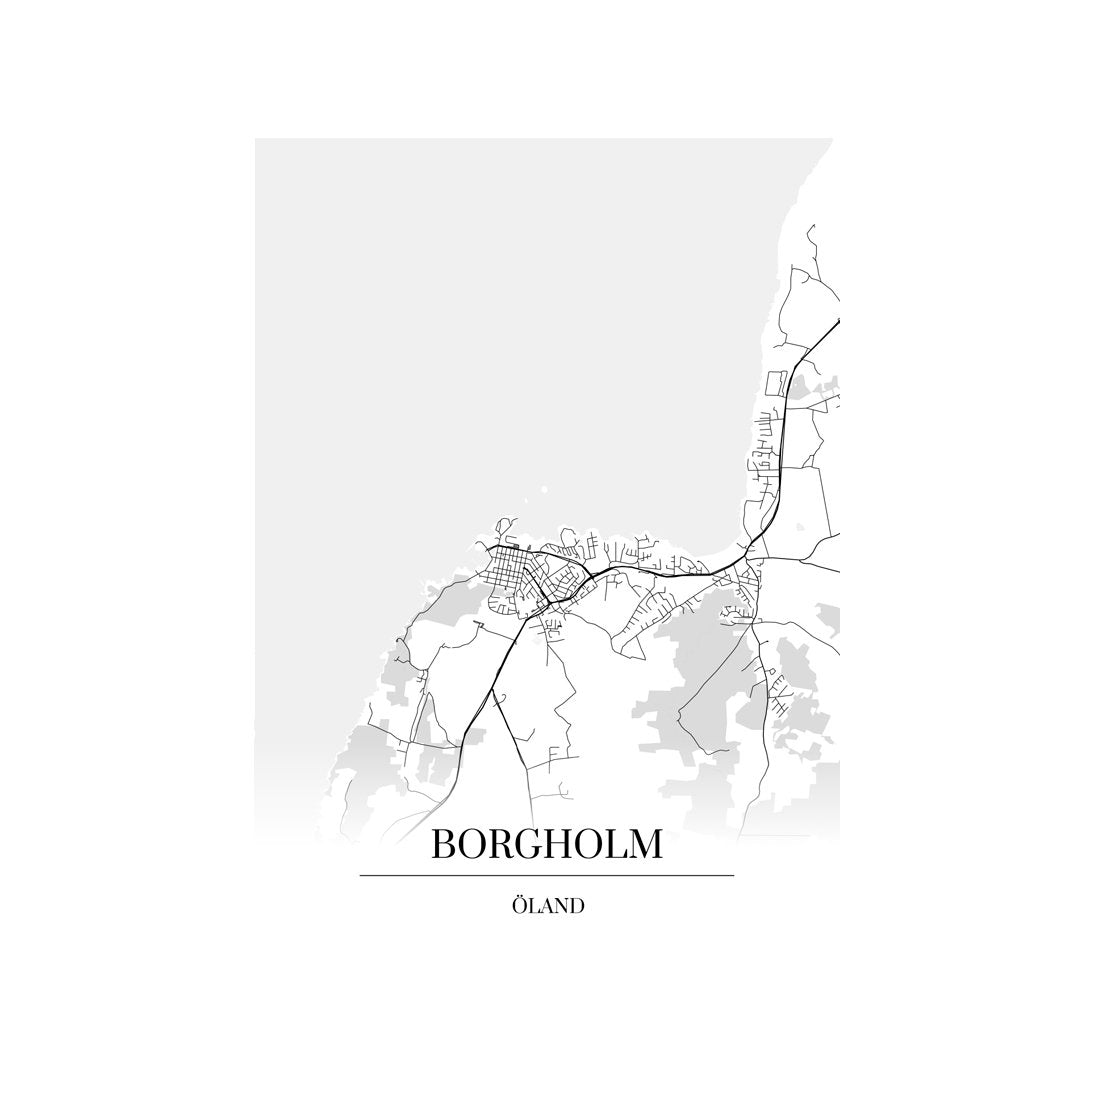 Borgholm